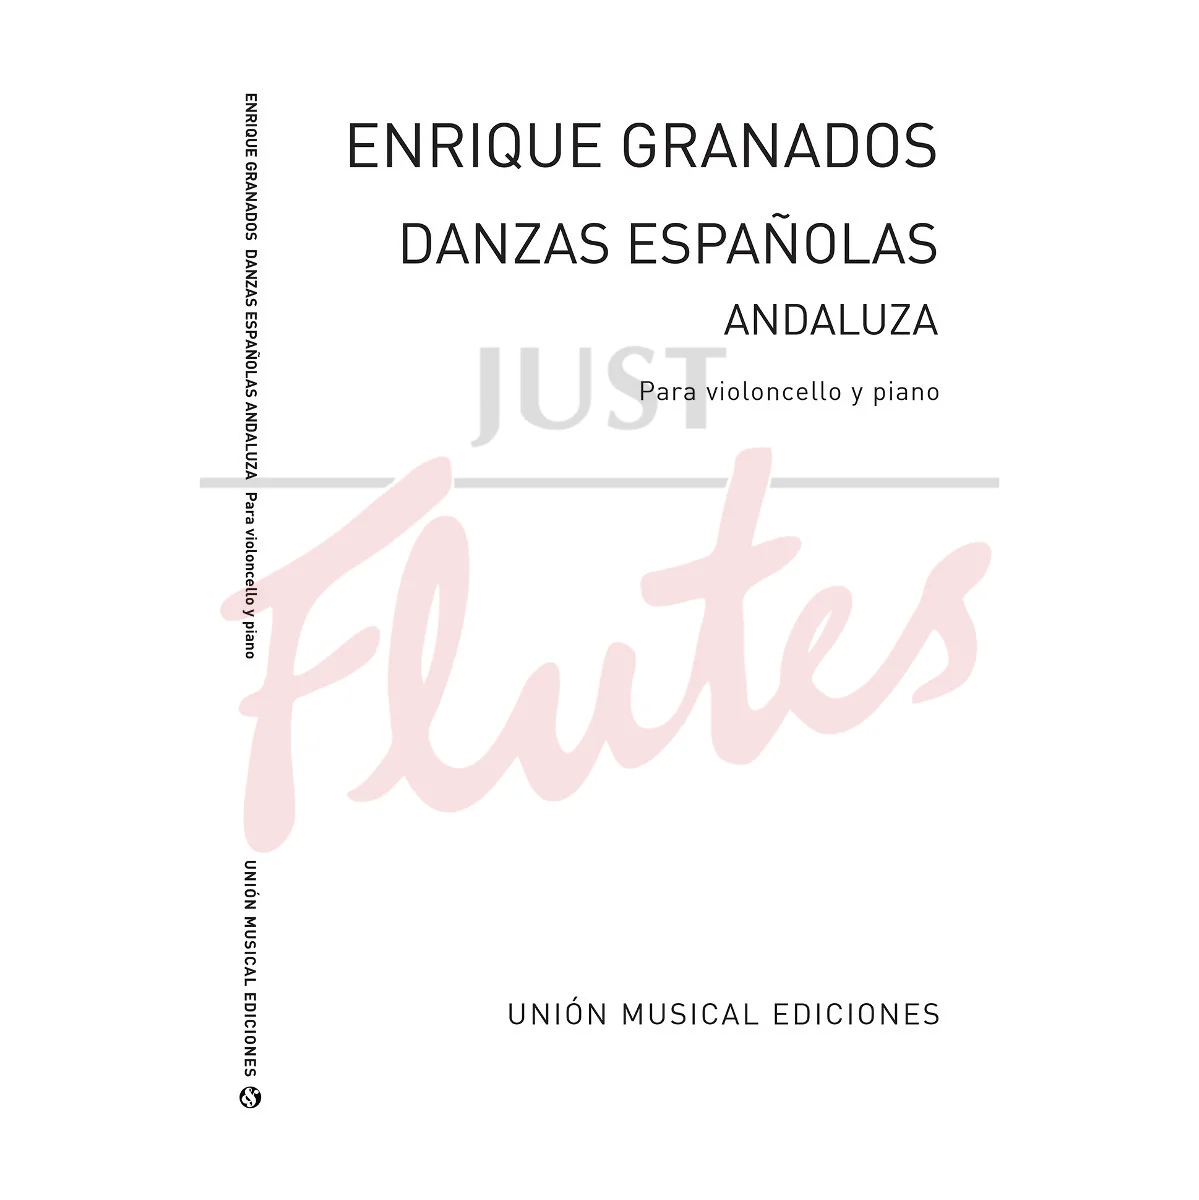 Danzas Españolas No. 5: Andaluza for Cello and Piano